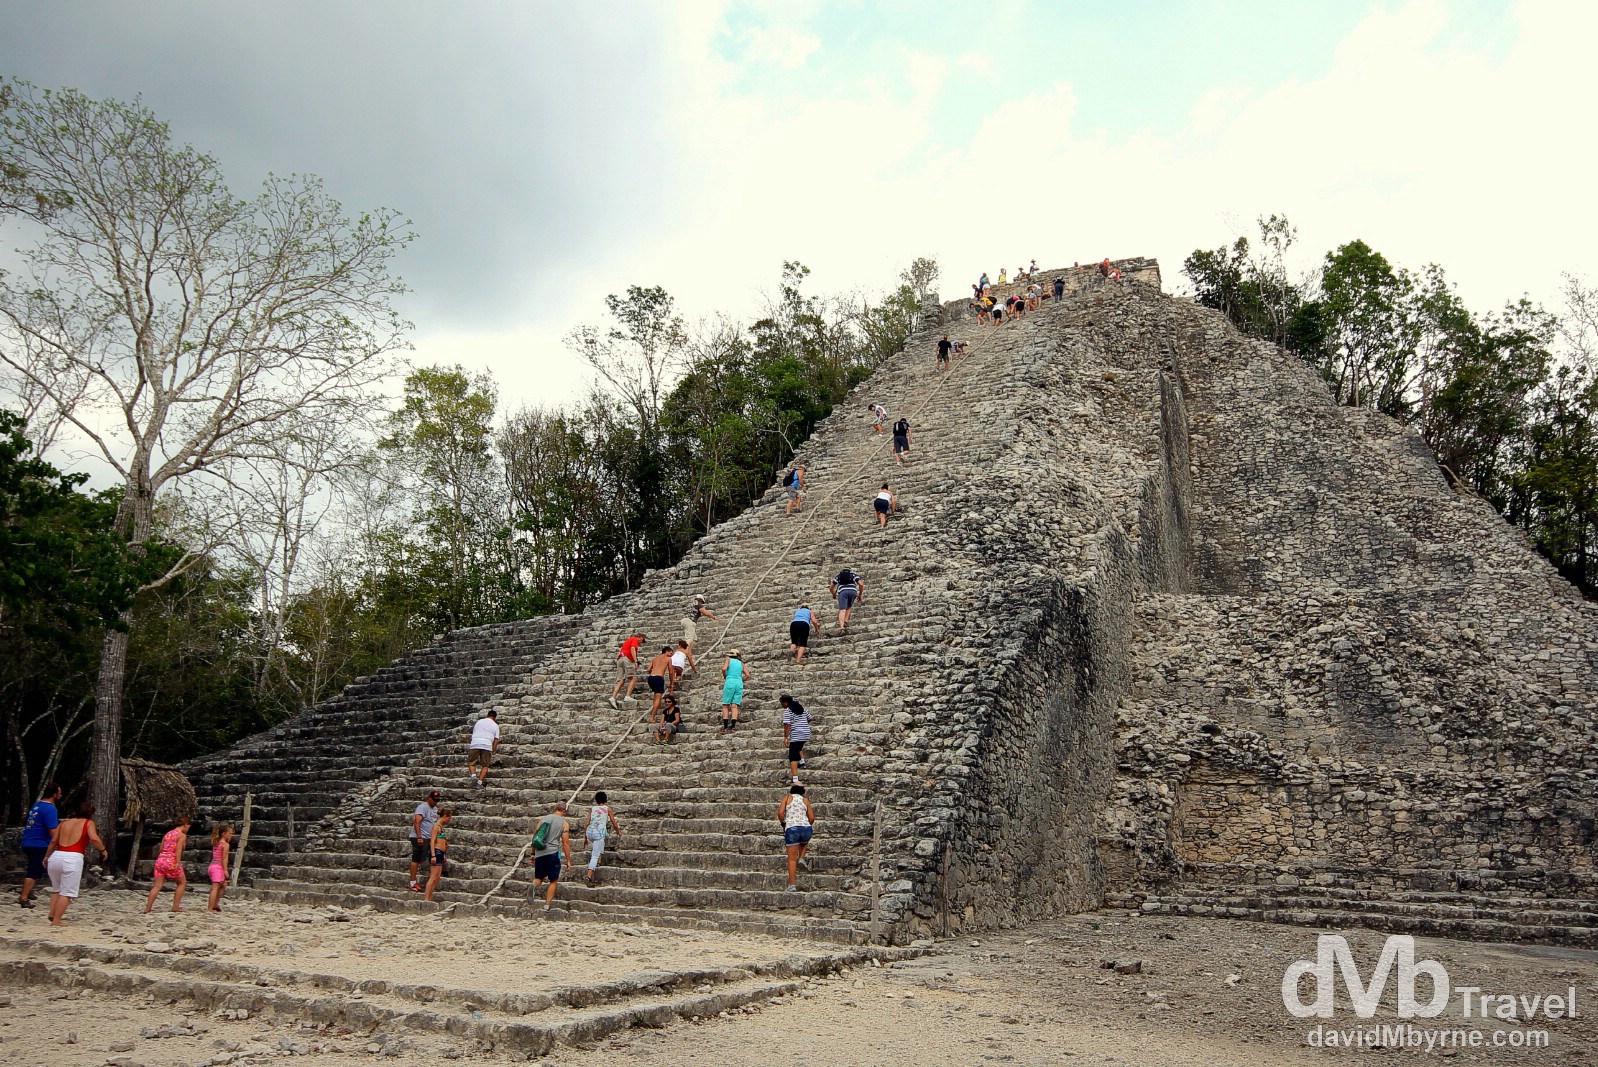 Climbing the Nohoch Mul (Big Mound), or Great Pyramid, at the Coba Mayan ruins, Yucatan Peninsula, Mexico. May 7th 2013.